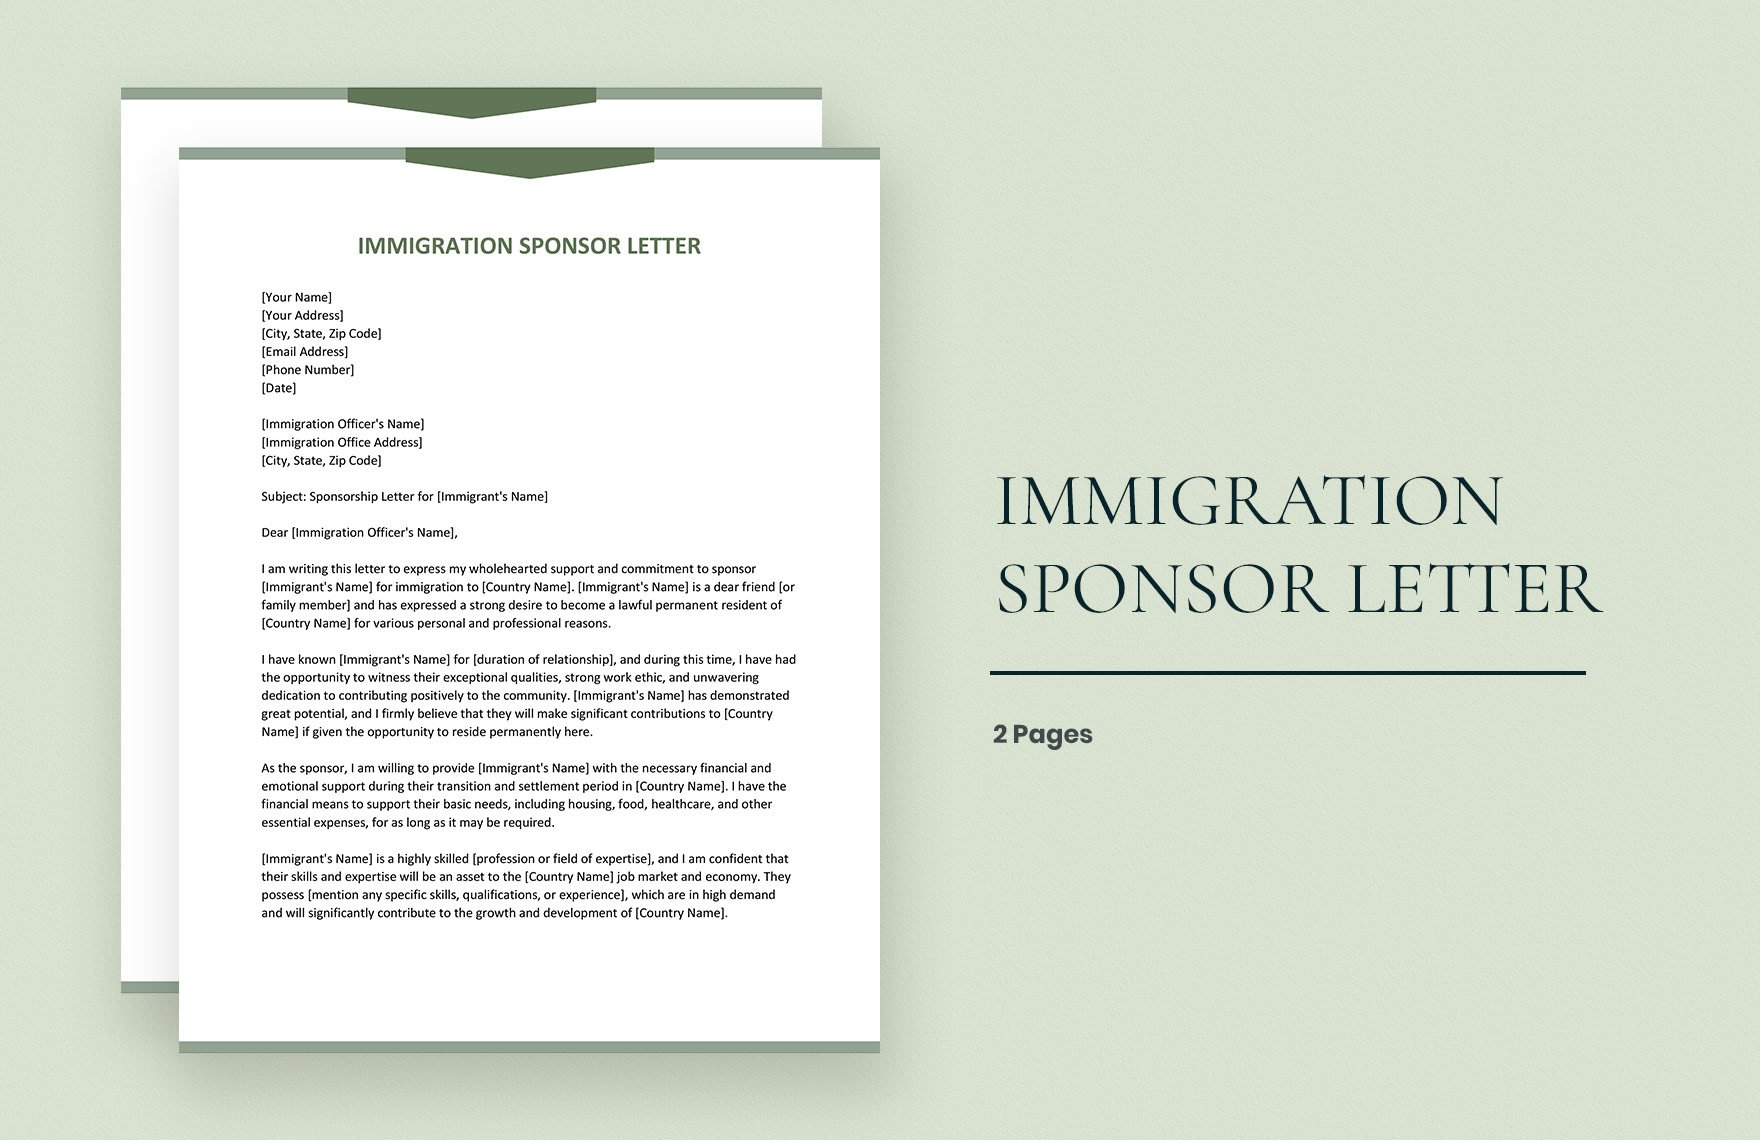 Free Immigration Sponsor Letter Download in Word, Google Docs, Apple